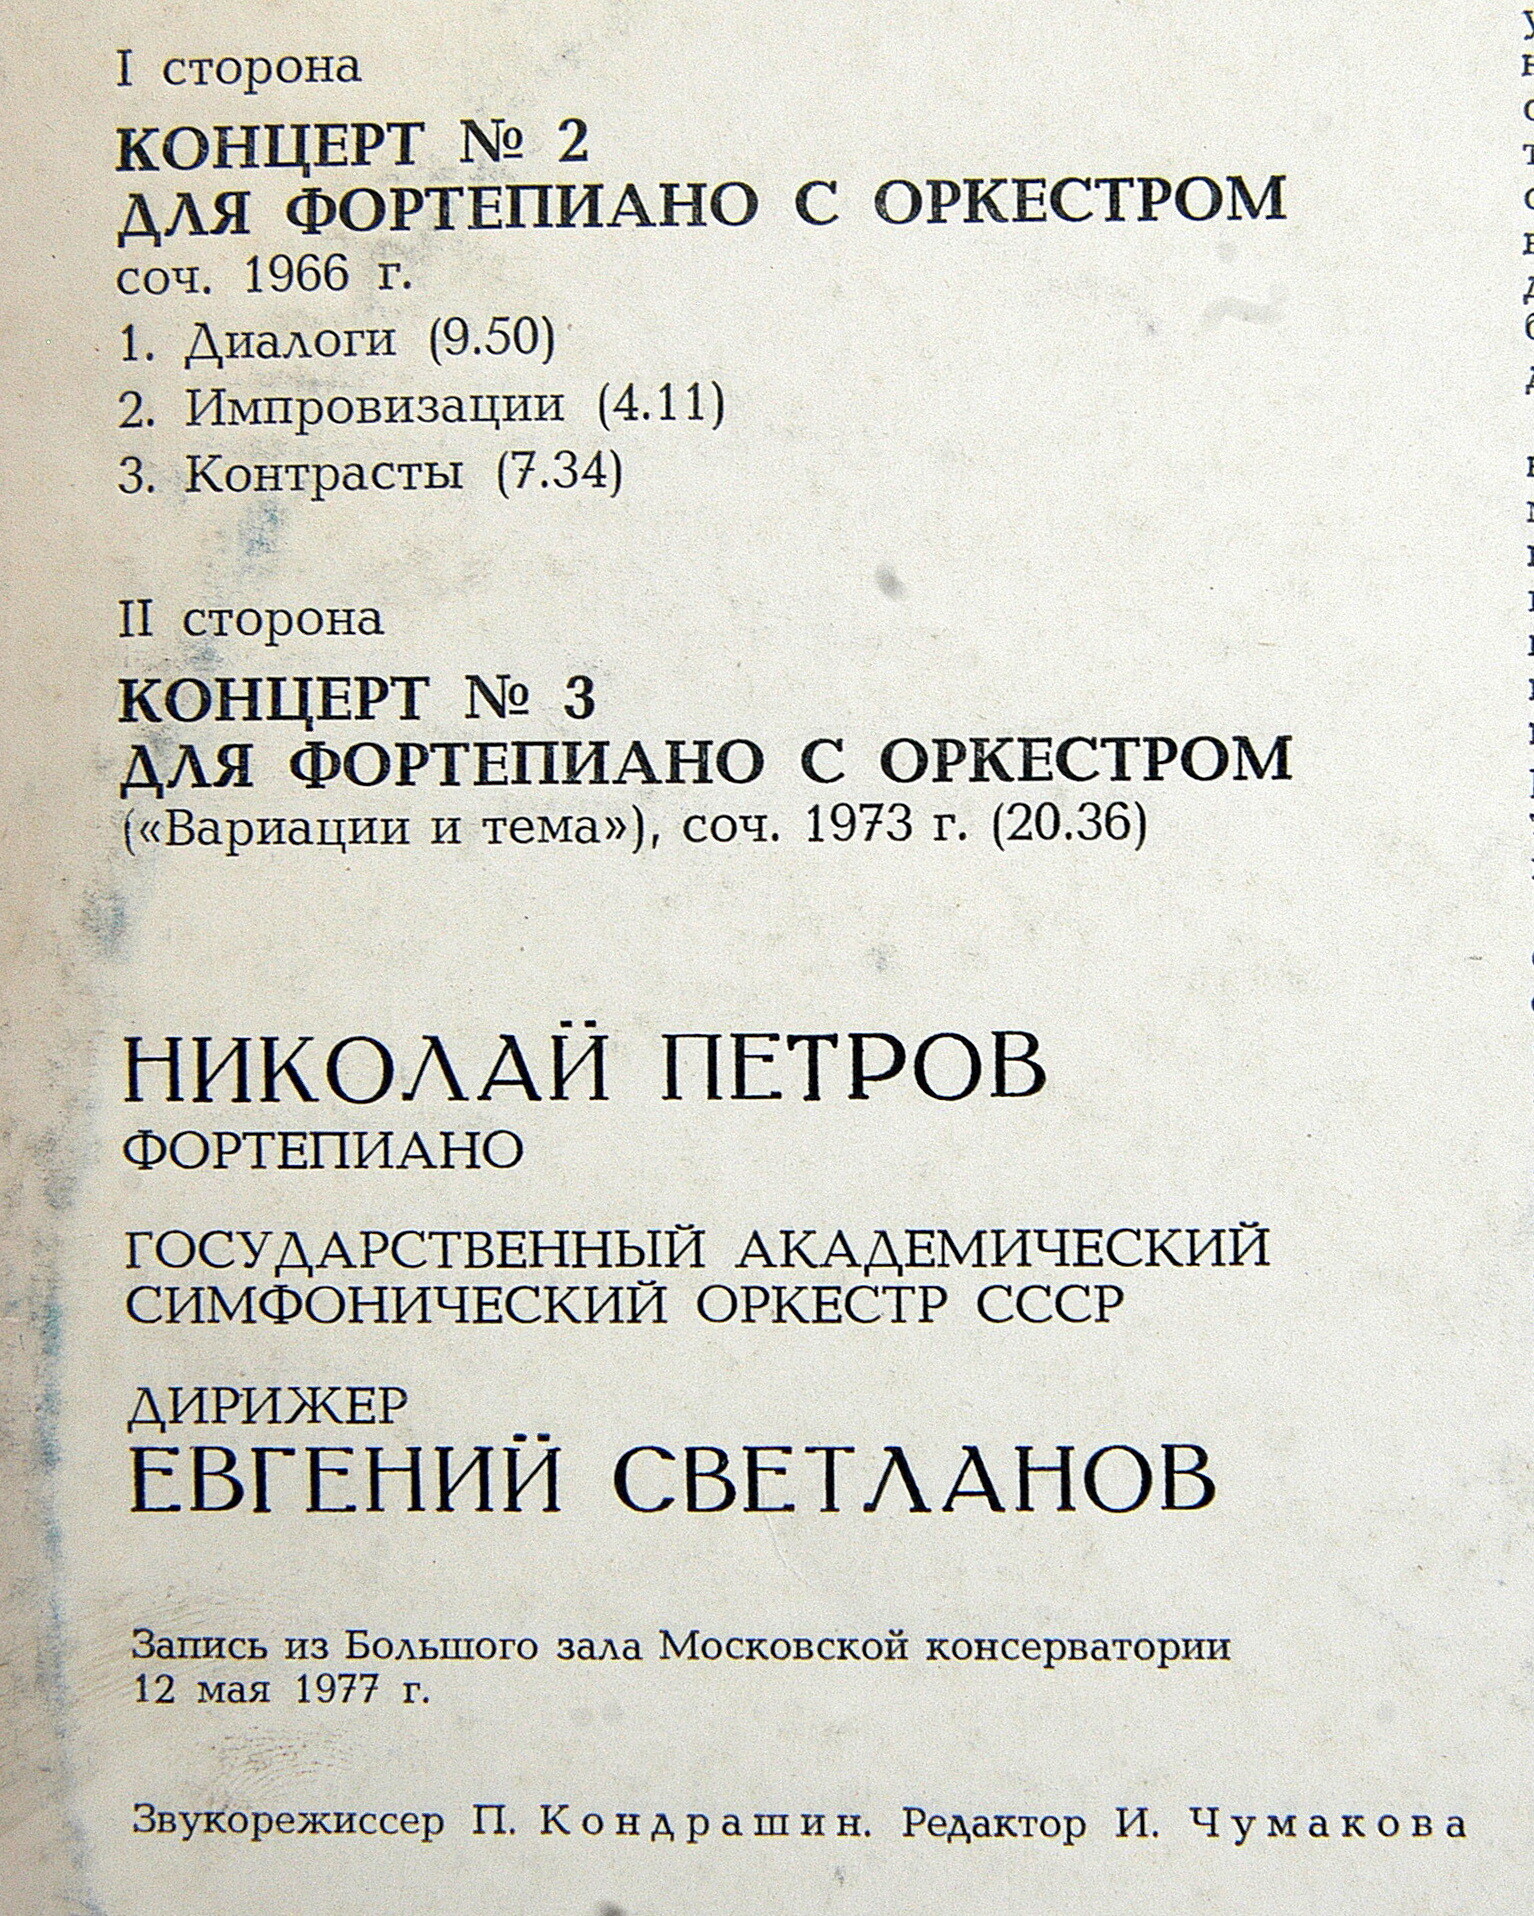 Р. ЩЕДРИН (1932). НИКОЛАЙ ПЕТРОВ (ф-но)